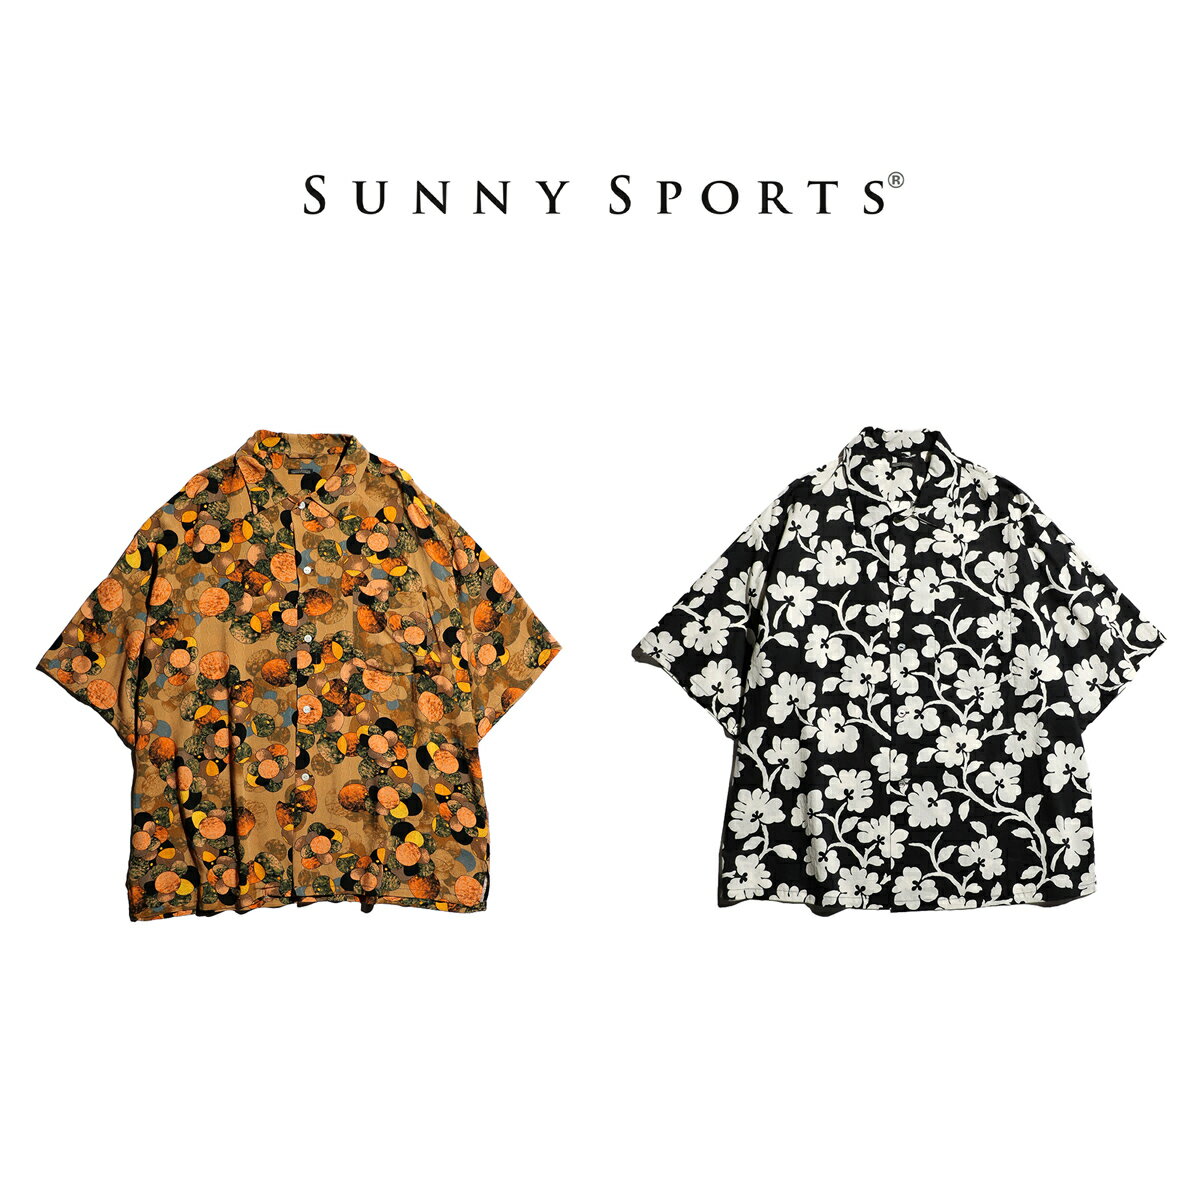 【SUNNY SPORTS / サニースポーツ】 PRINTED BOX SHIRTS 半袖 ボックスシルエット 総柄シャツ